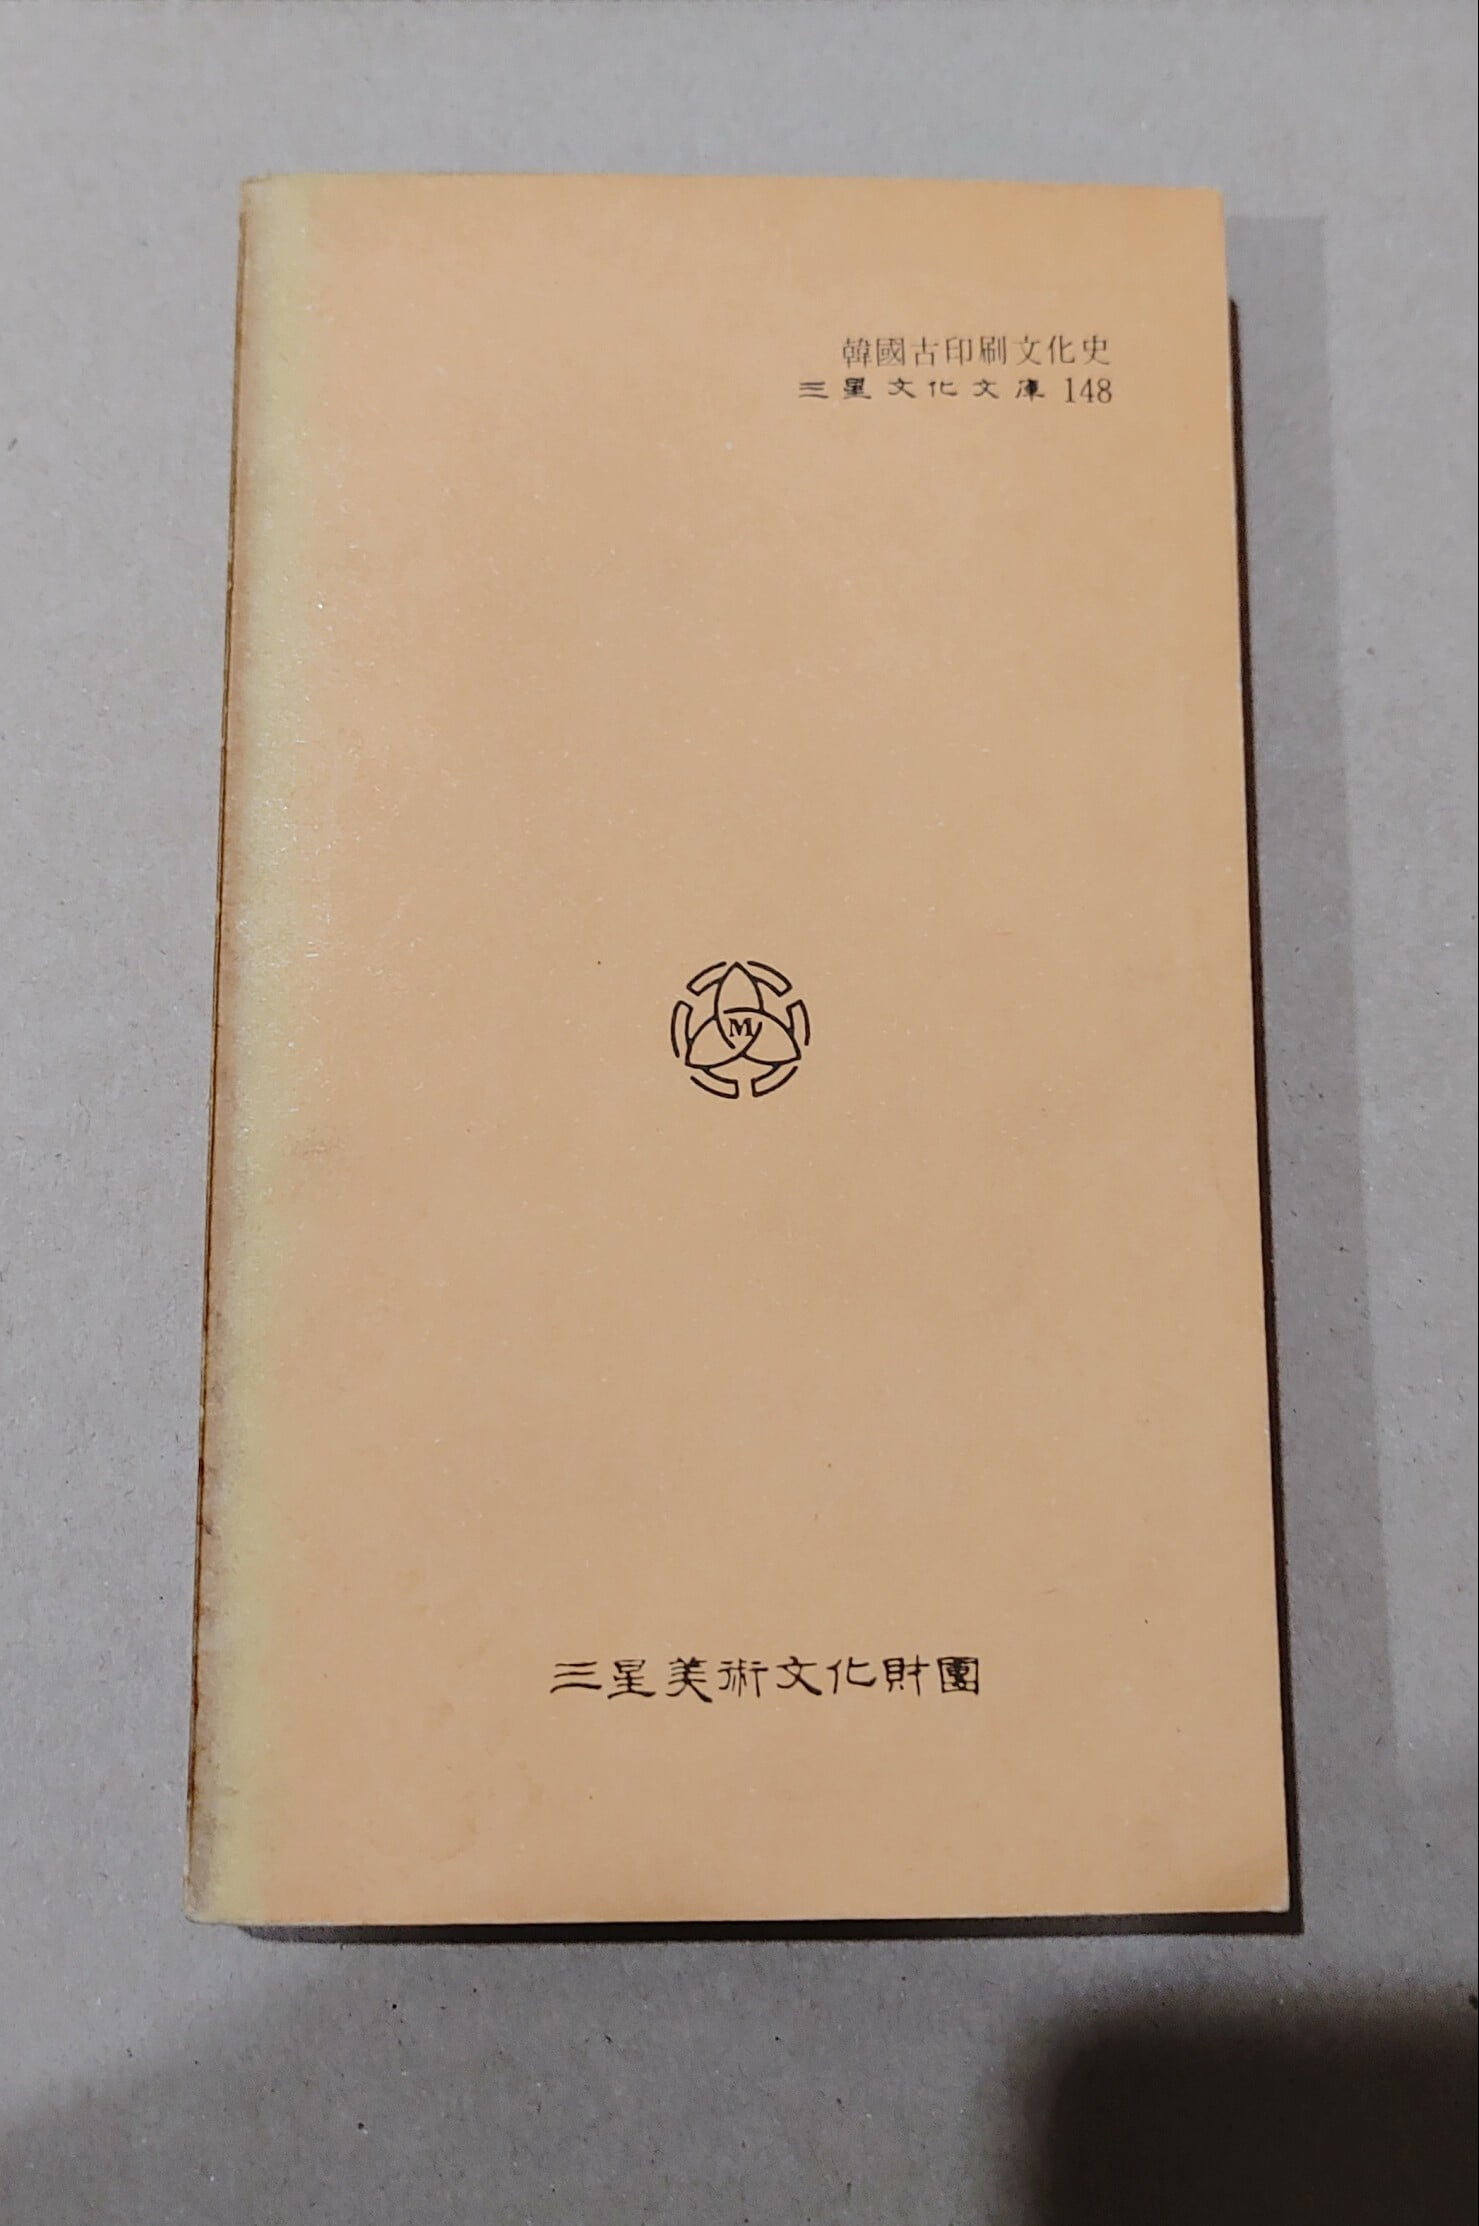 三星文化文庫148  韓國古印刷文化史  金斗鍾著